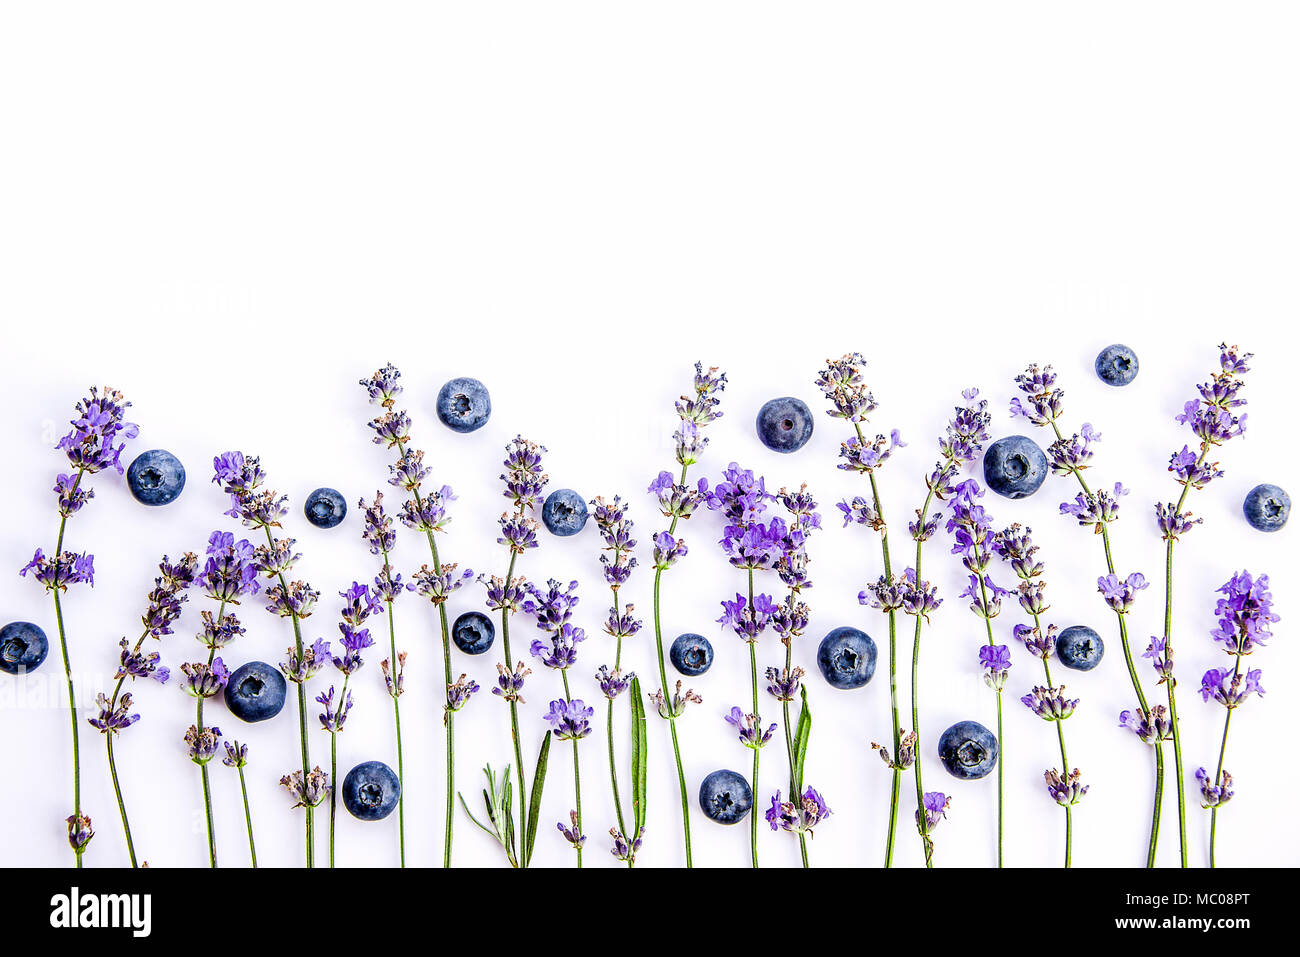 Frische Lavendelblüten und Heidelbeeren auf einem weißen Hintergrund. Lavendelblüten und Blaubeeren mock up. Kopieren Sie Platz. Stockfoto